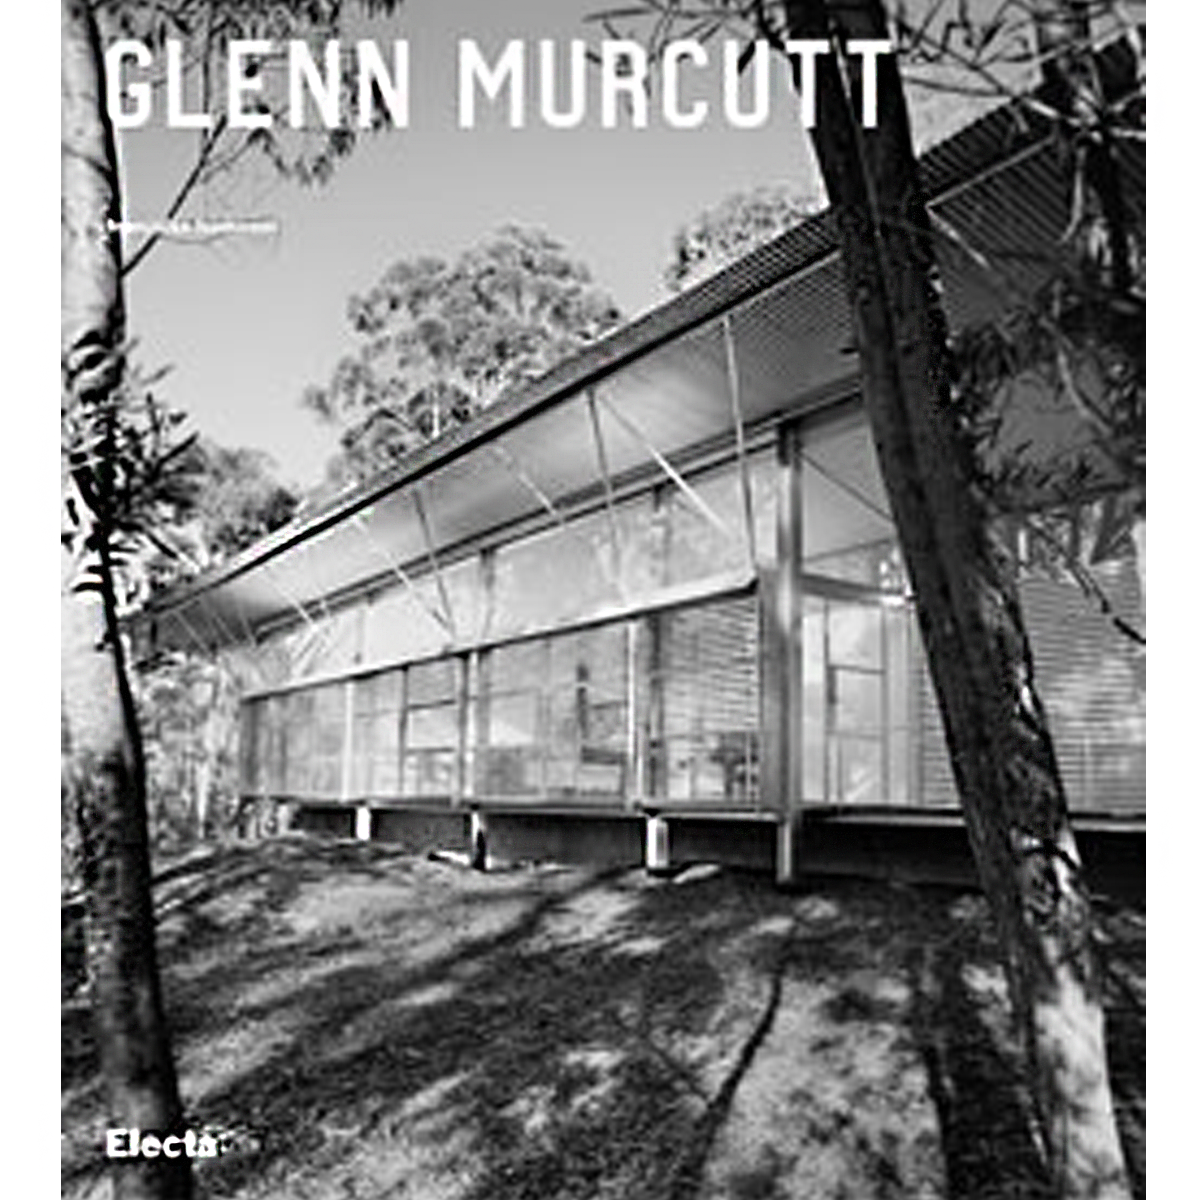 Glenn Murcutt: tutte le opere